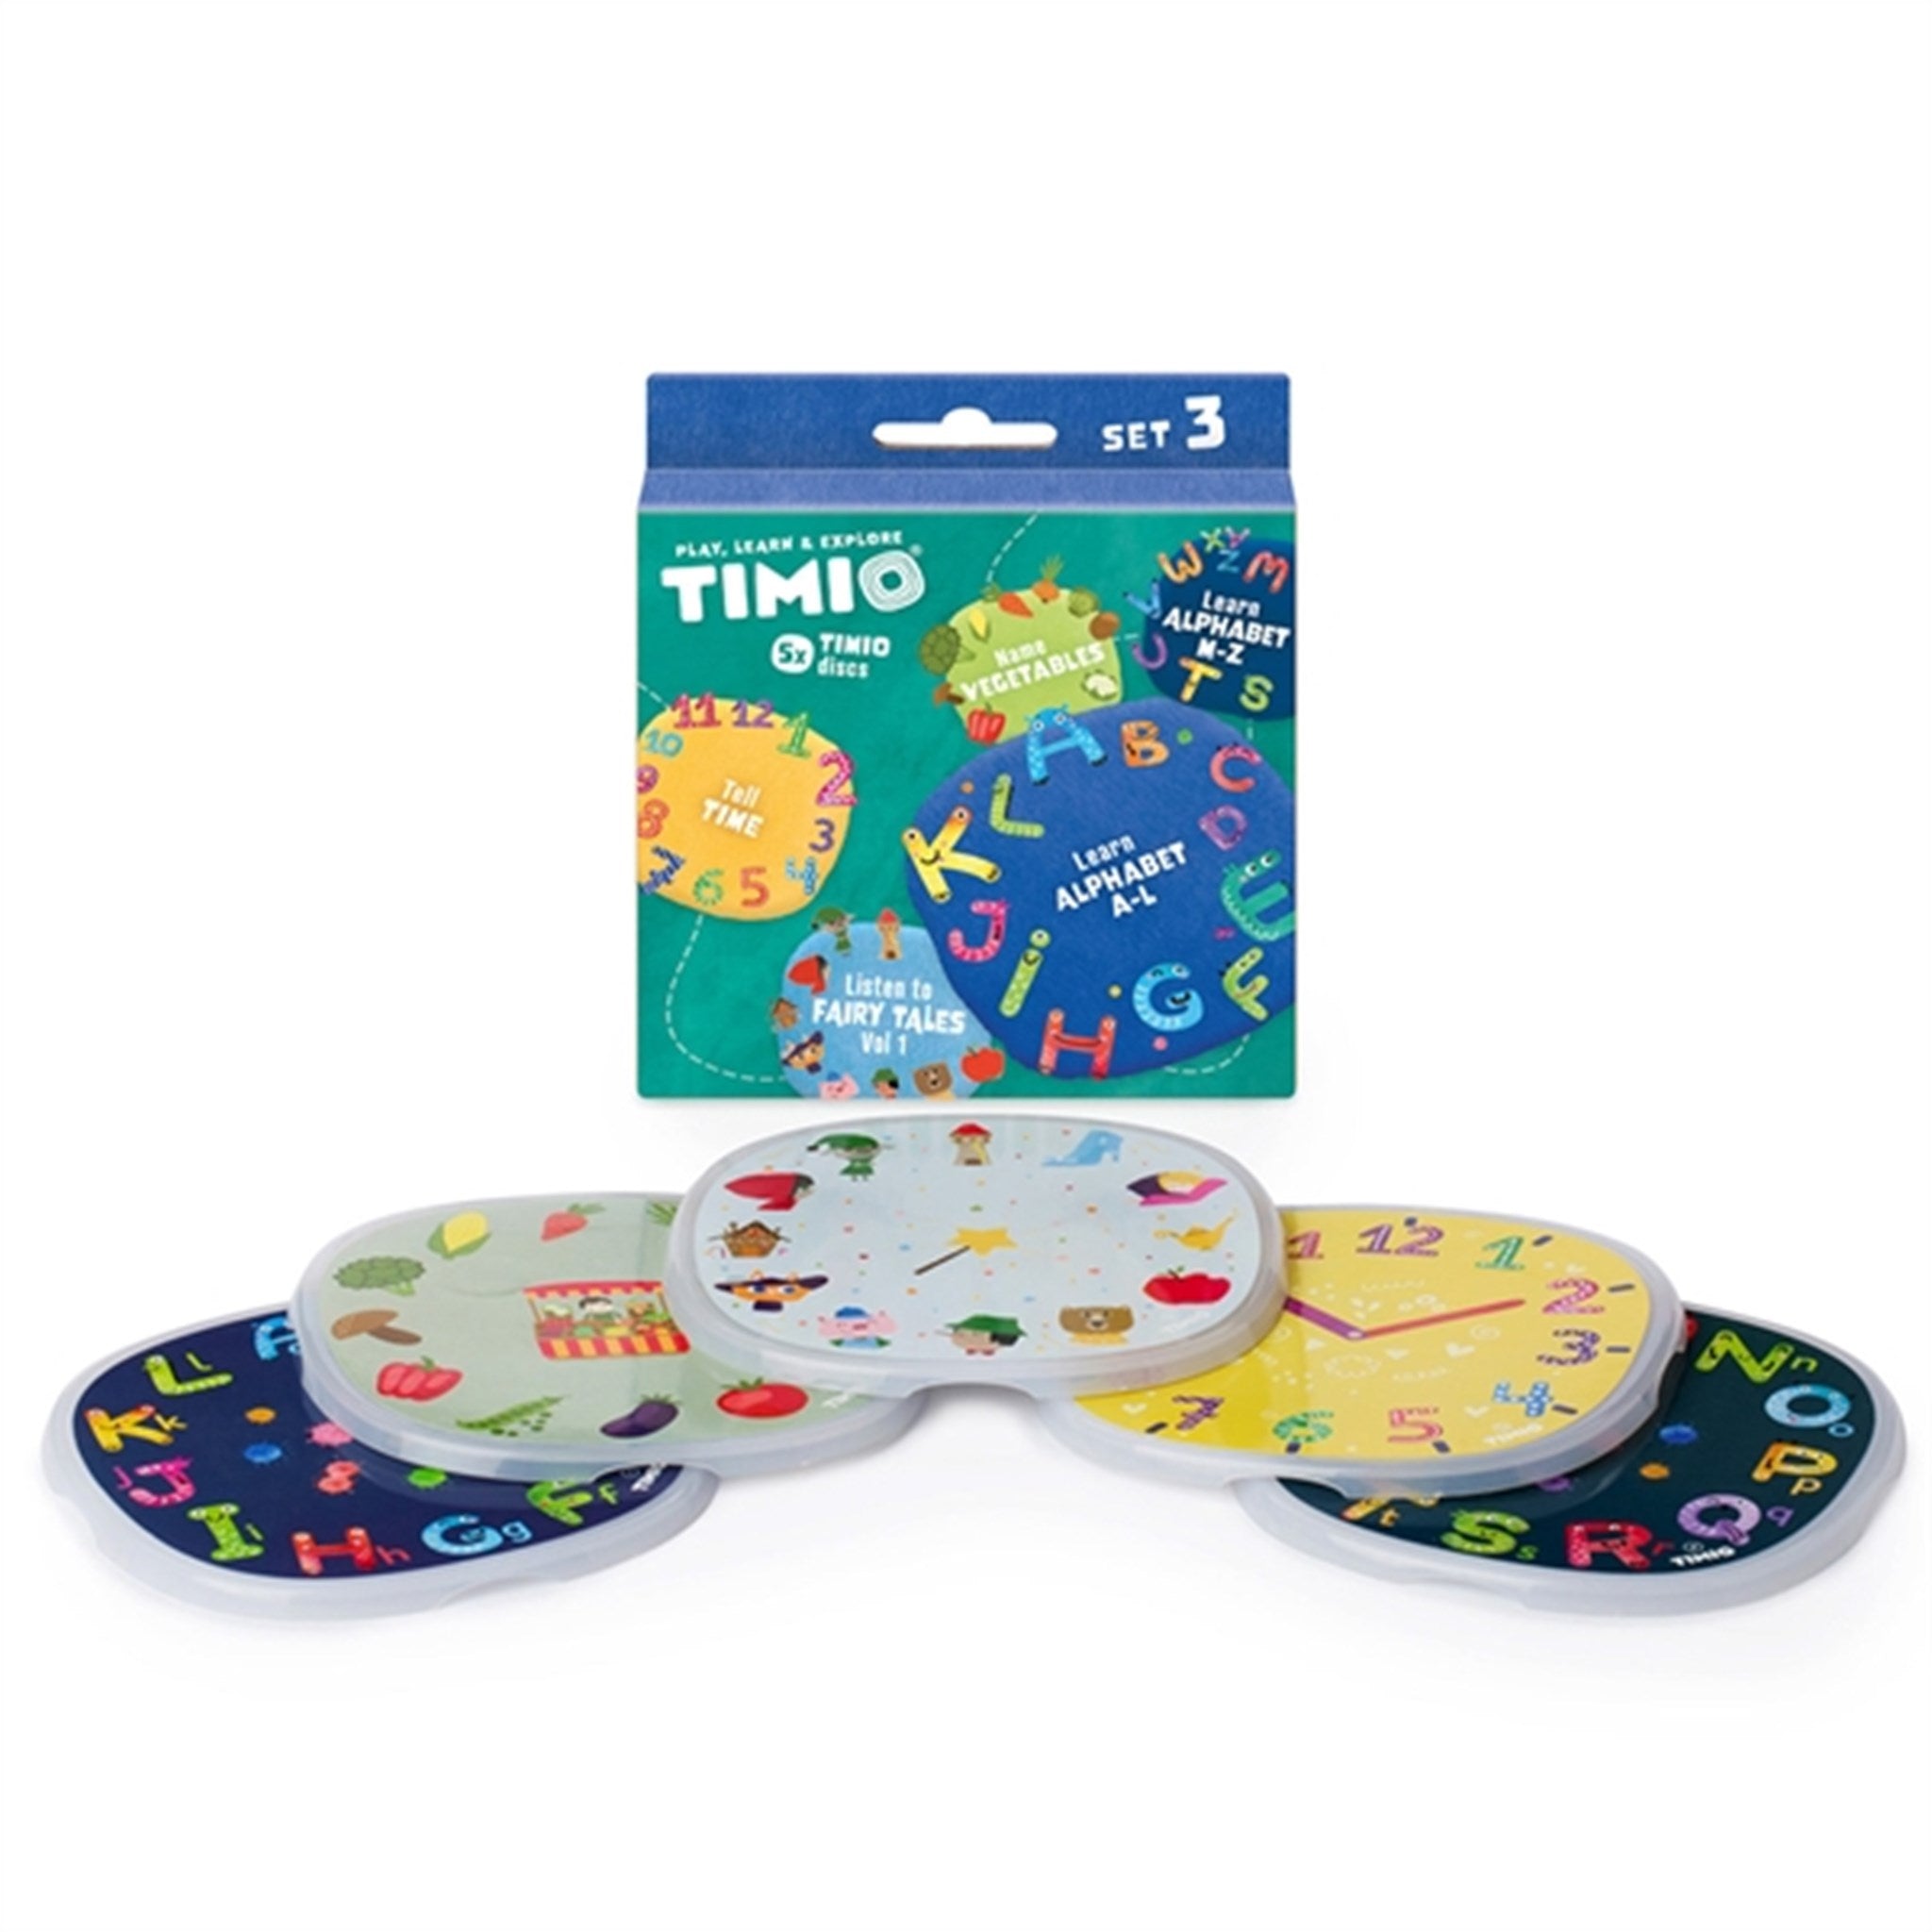 TIMIO® Disc Set 3